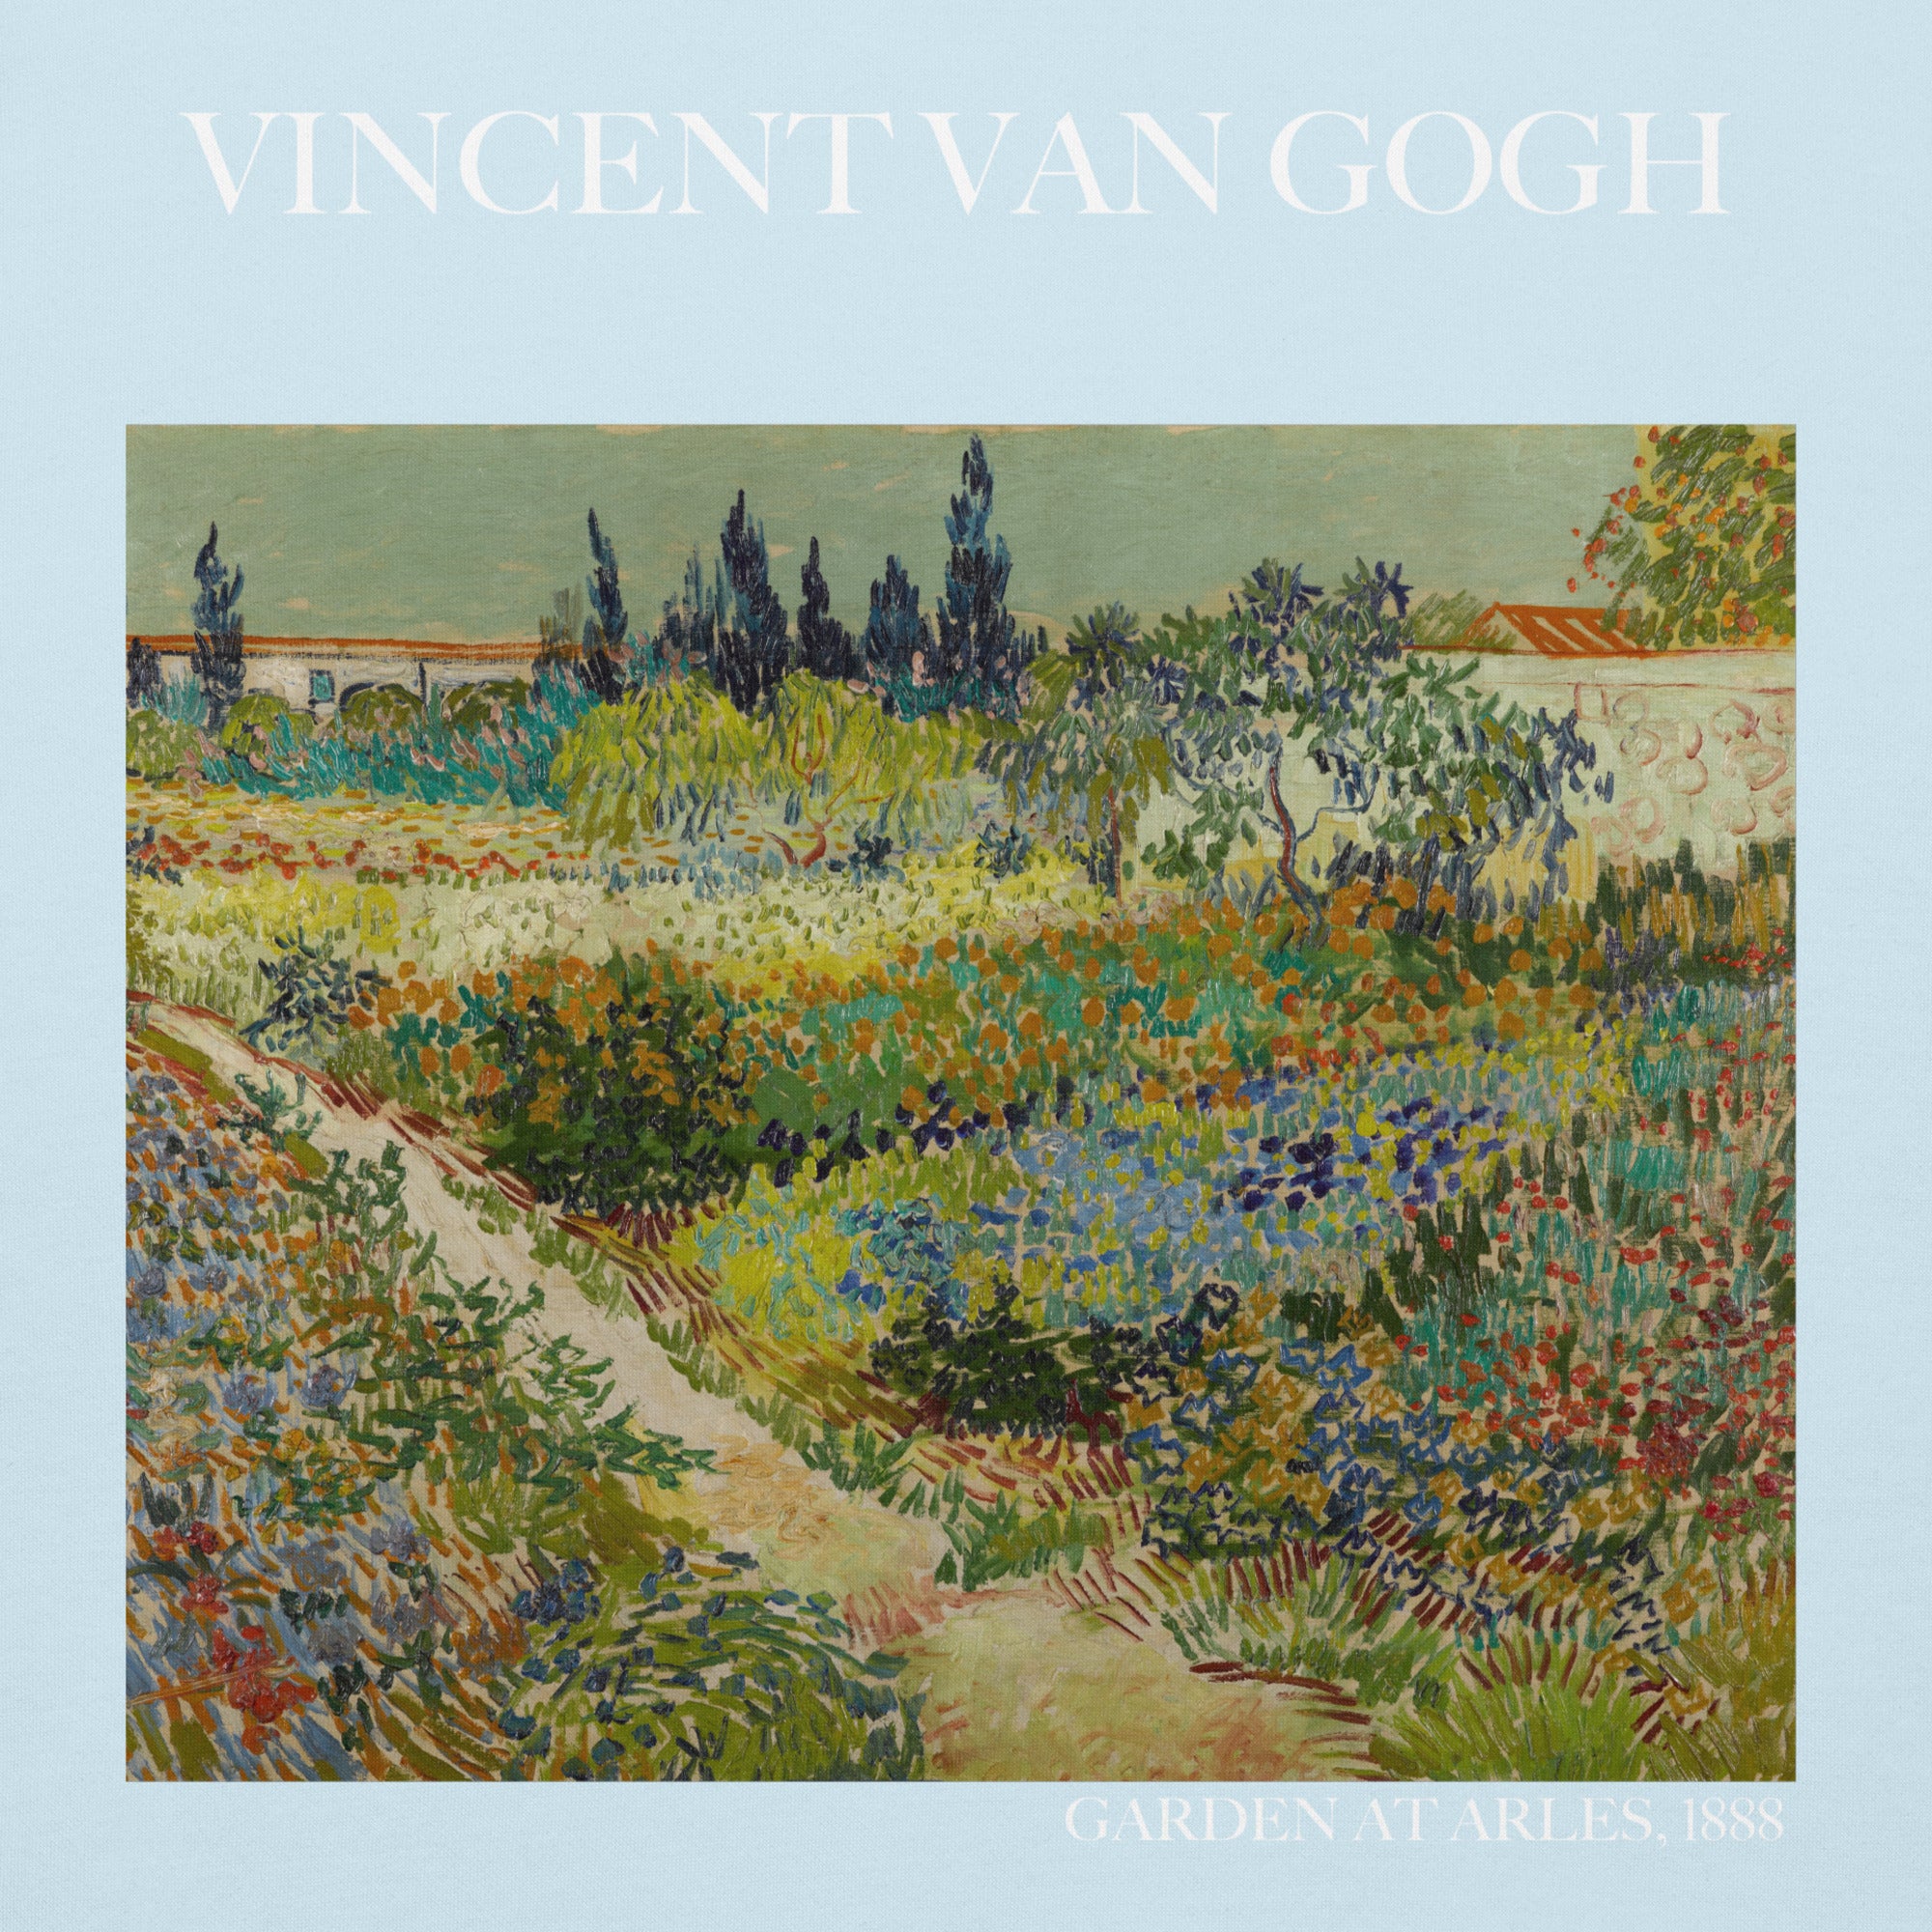 Vincent van Gogh 'Garden at Arles' Famous Painting Hoodie | Unisex Premium Art Hoodie